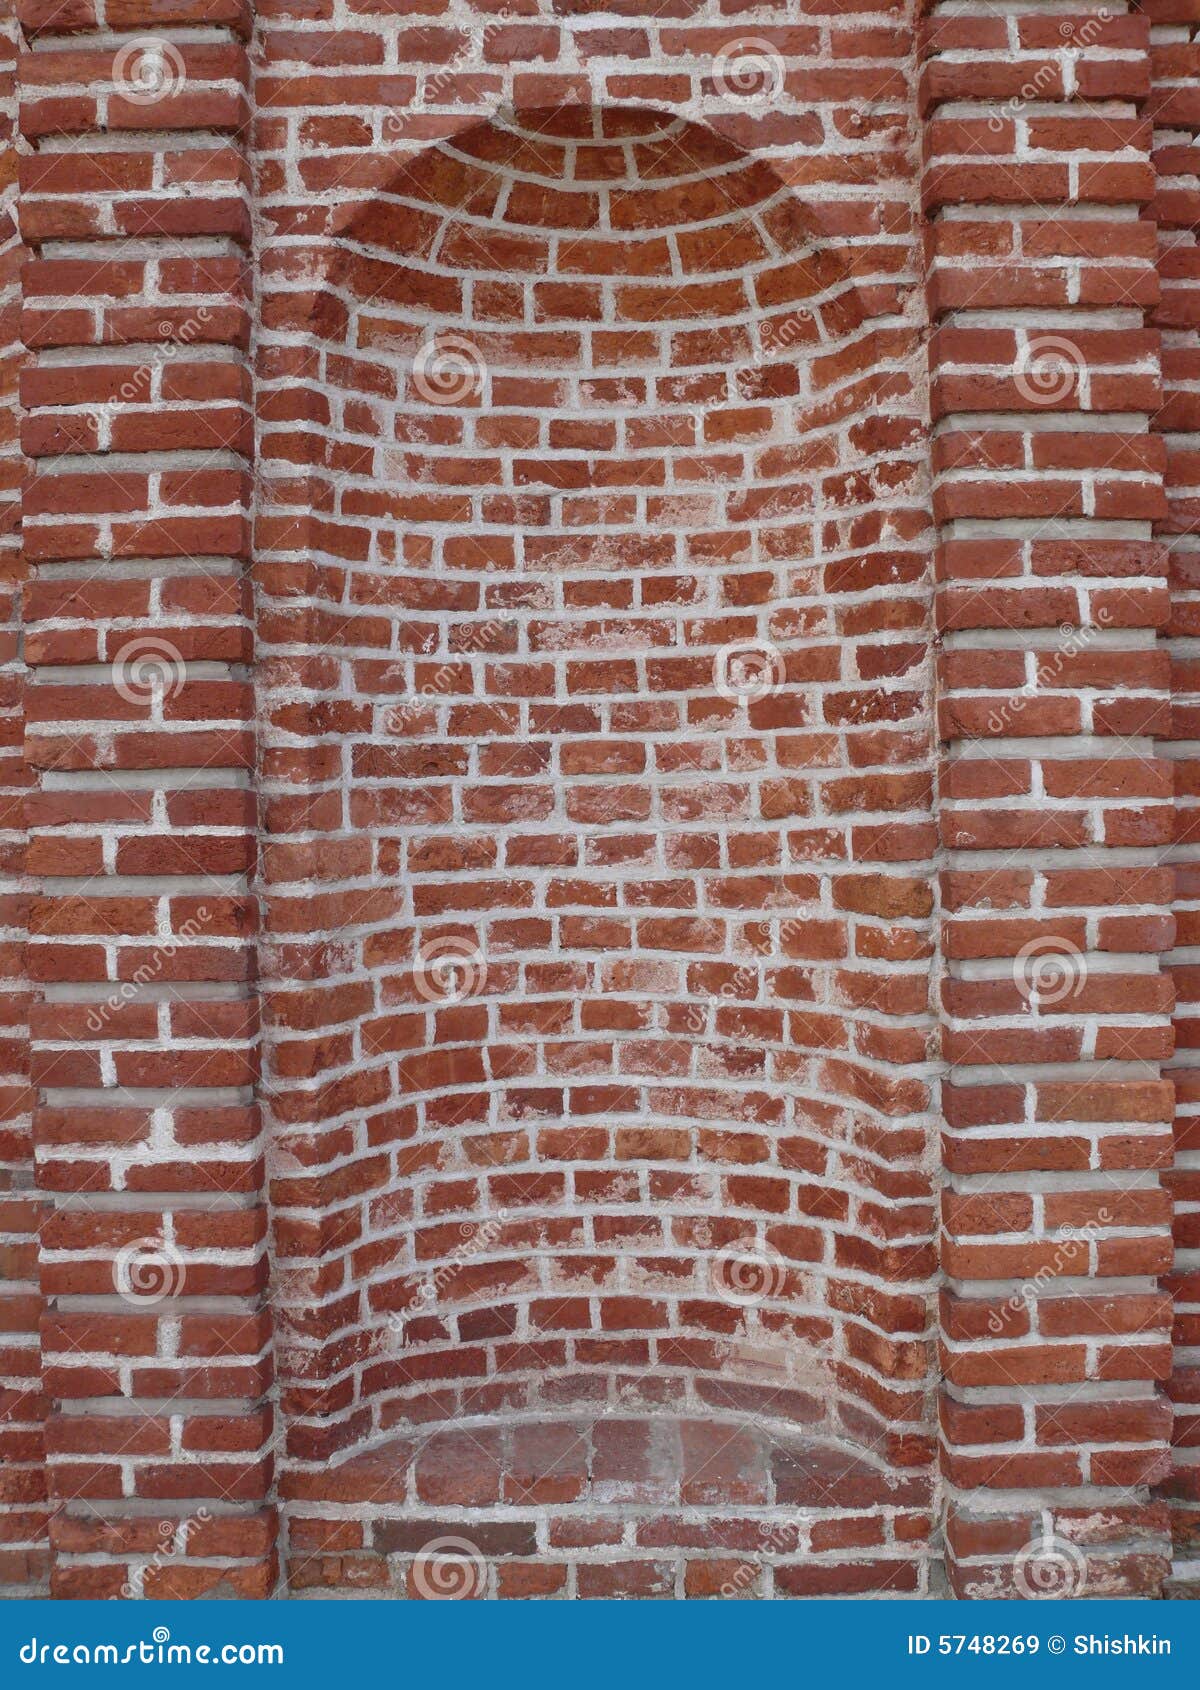 niche brick